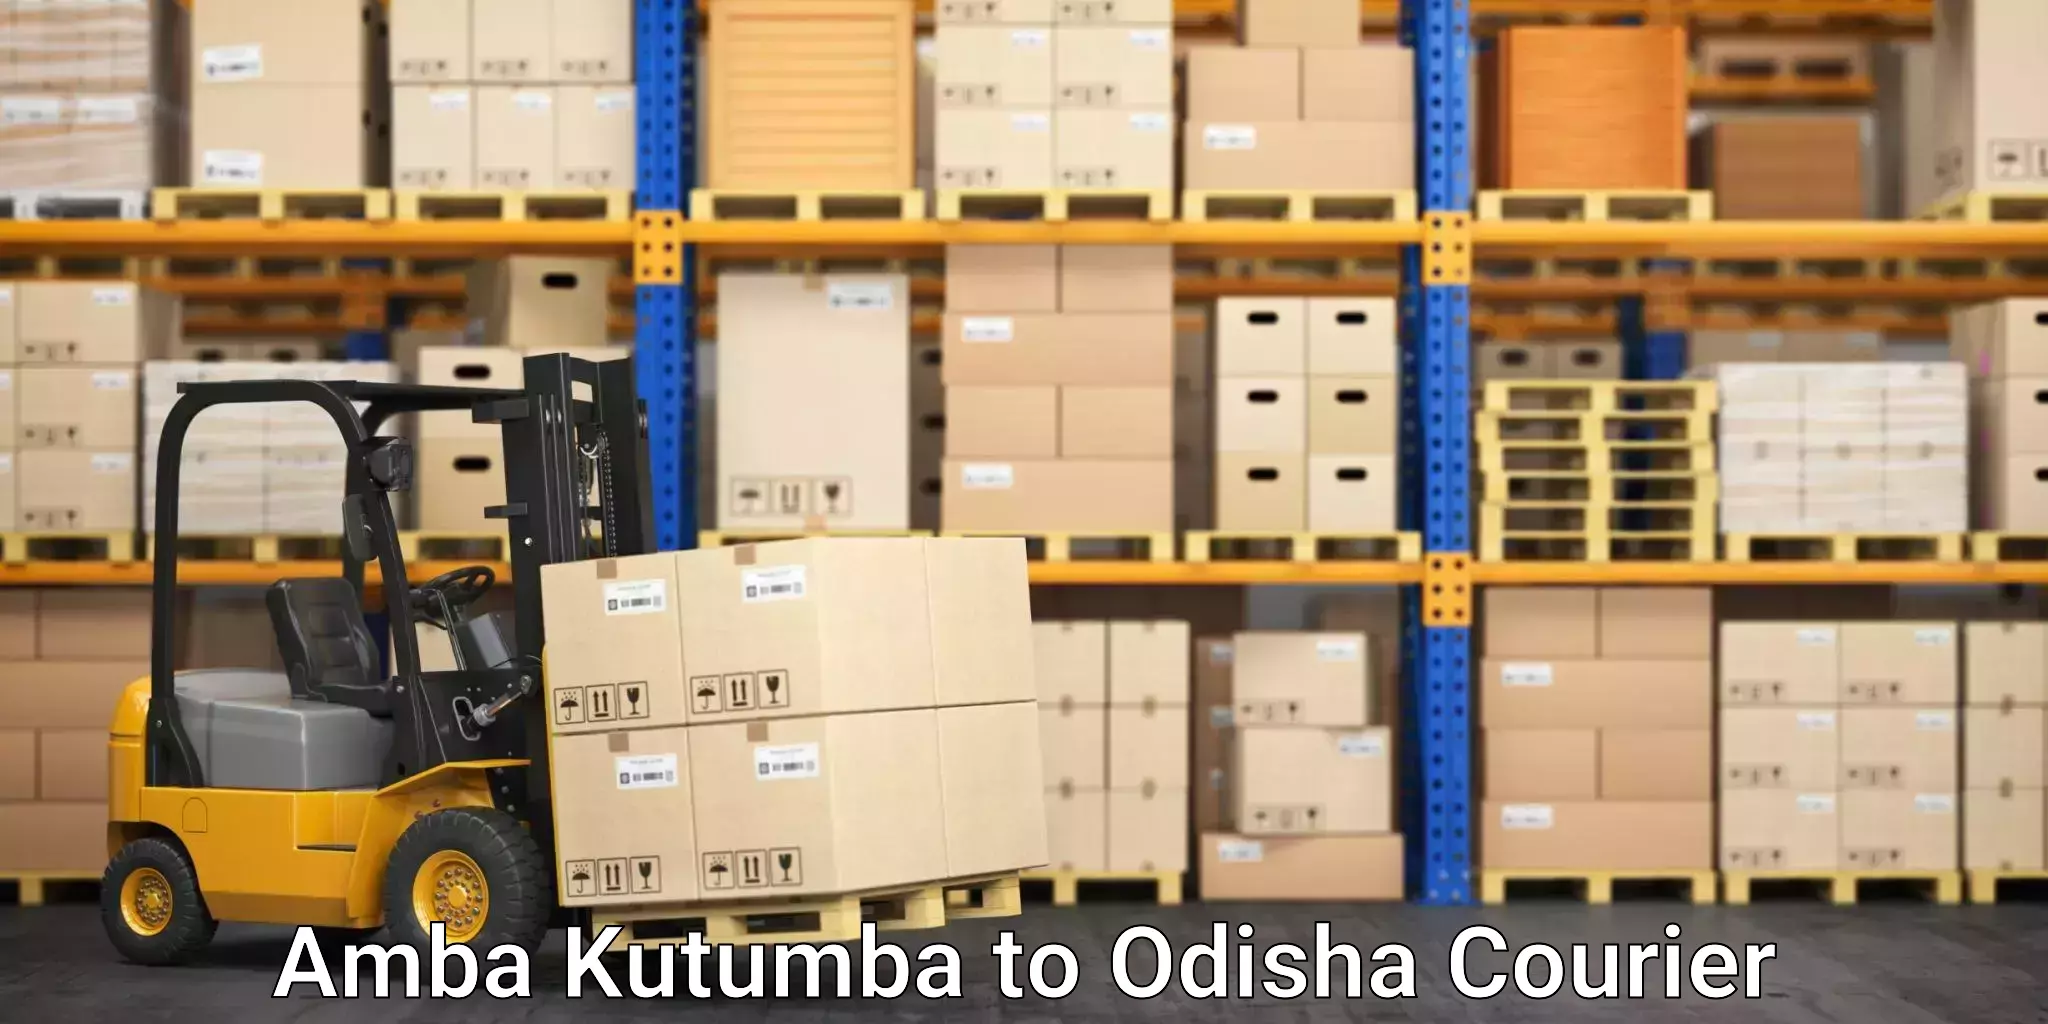 Furniture transport service Amba Kutumba to Kodala